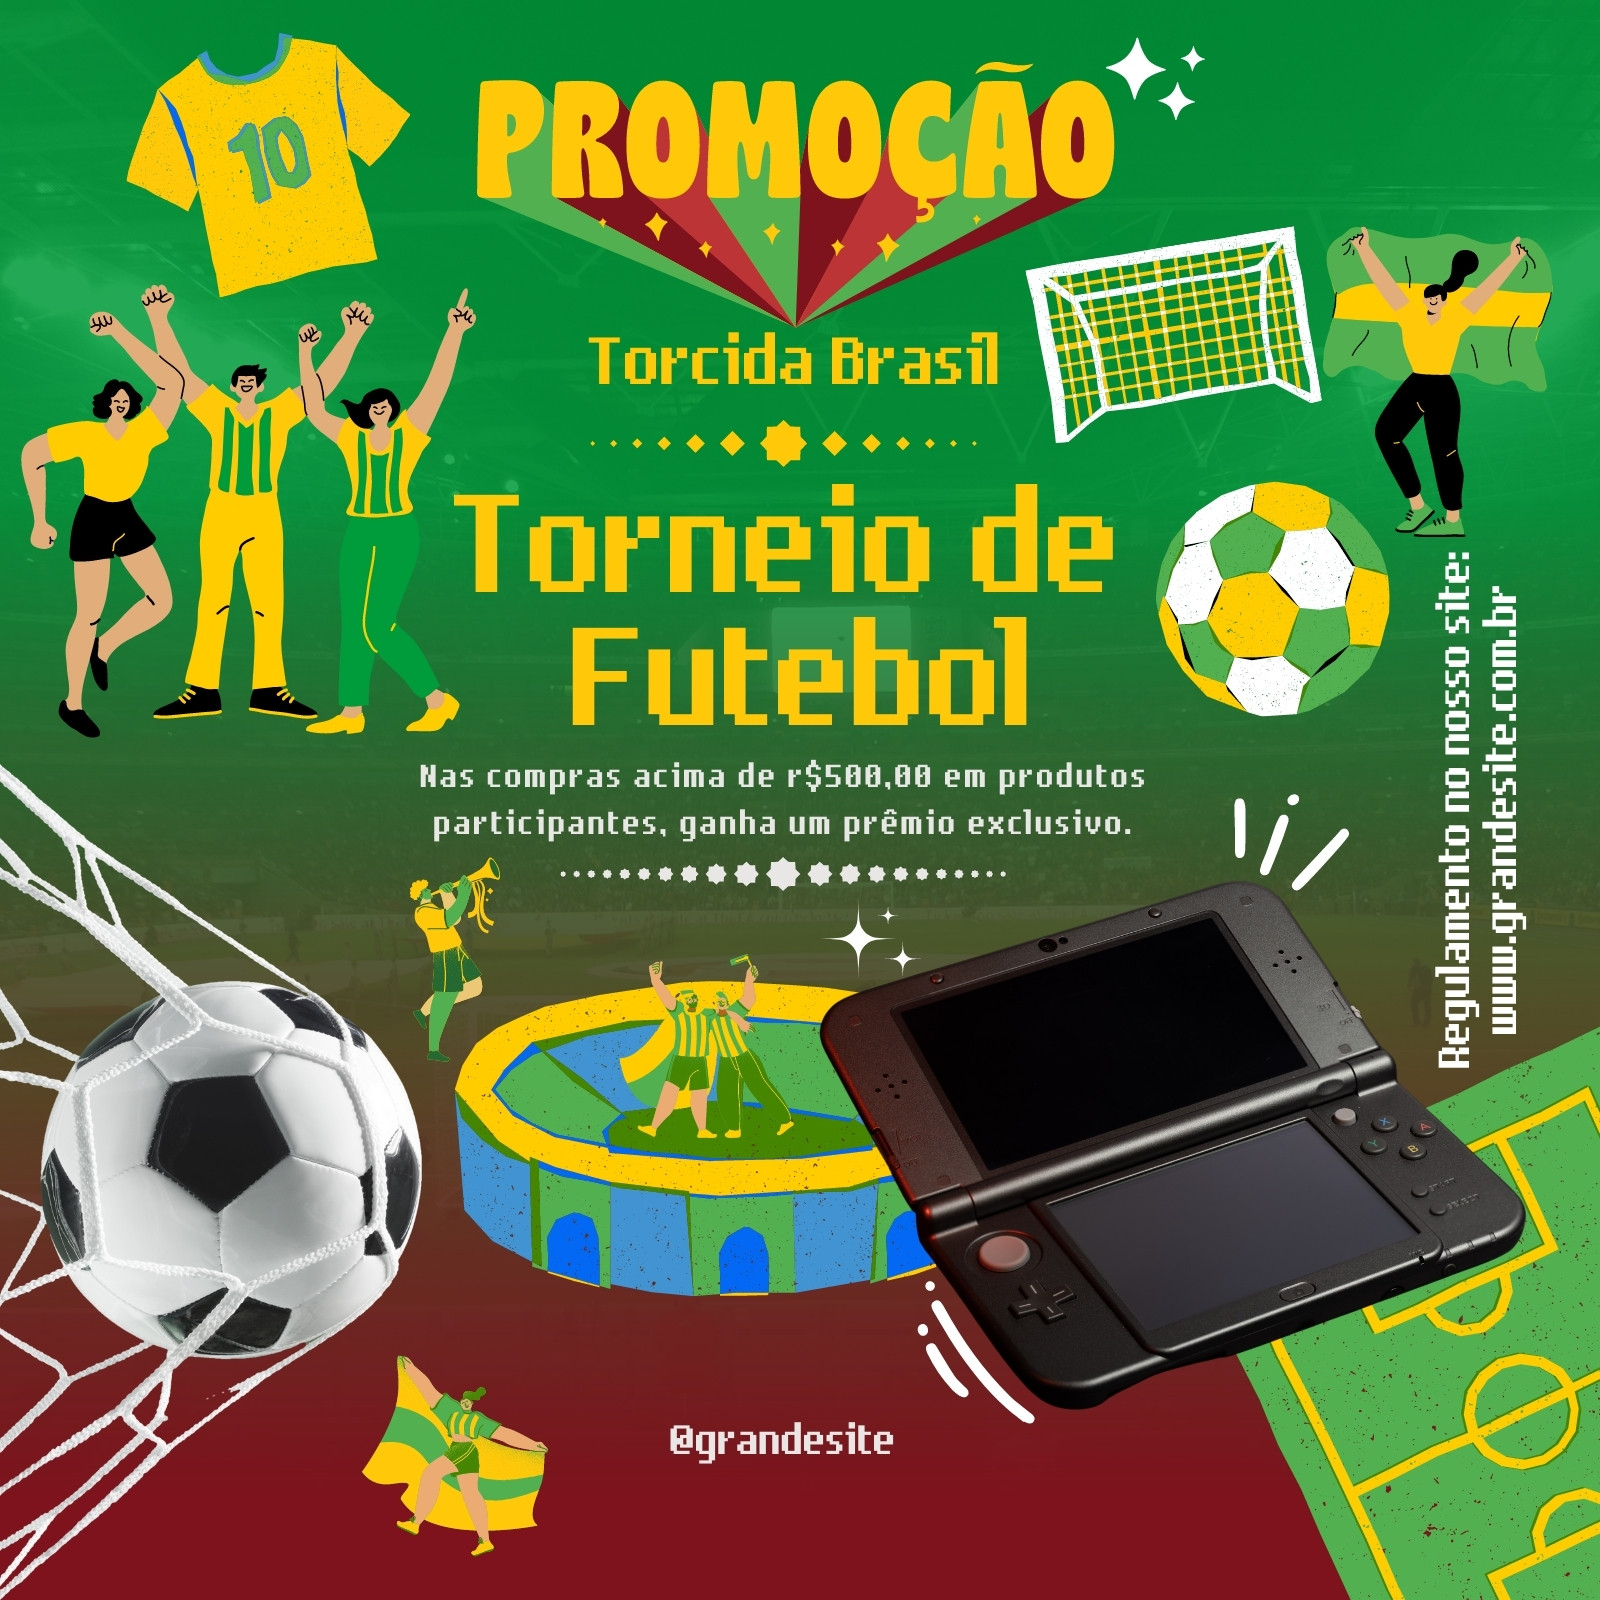 Smartphone com jogo online de bola de futebol ou fluxo de vídeo